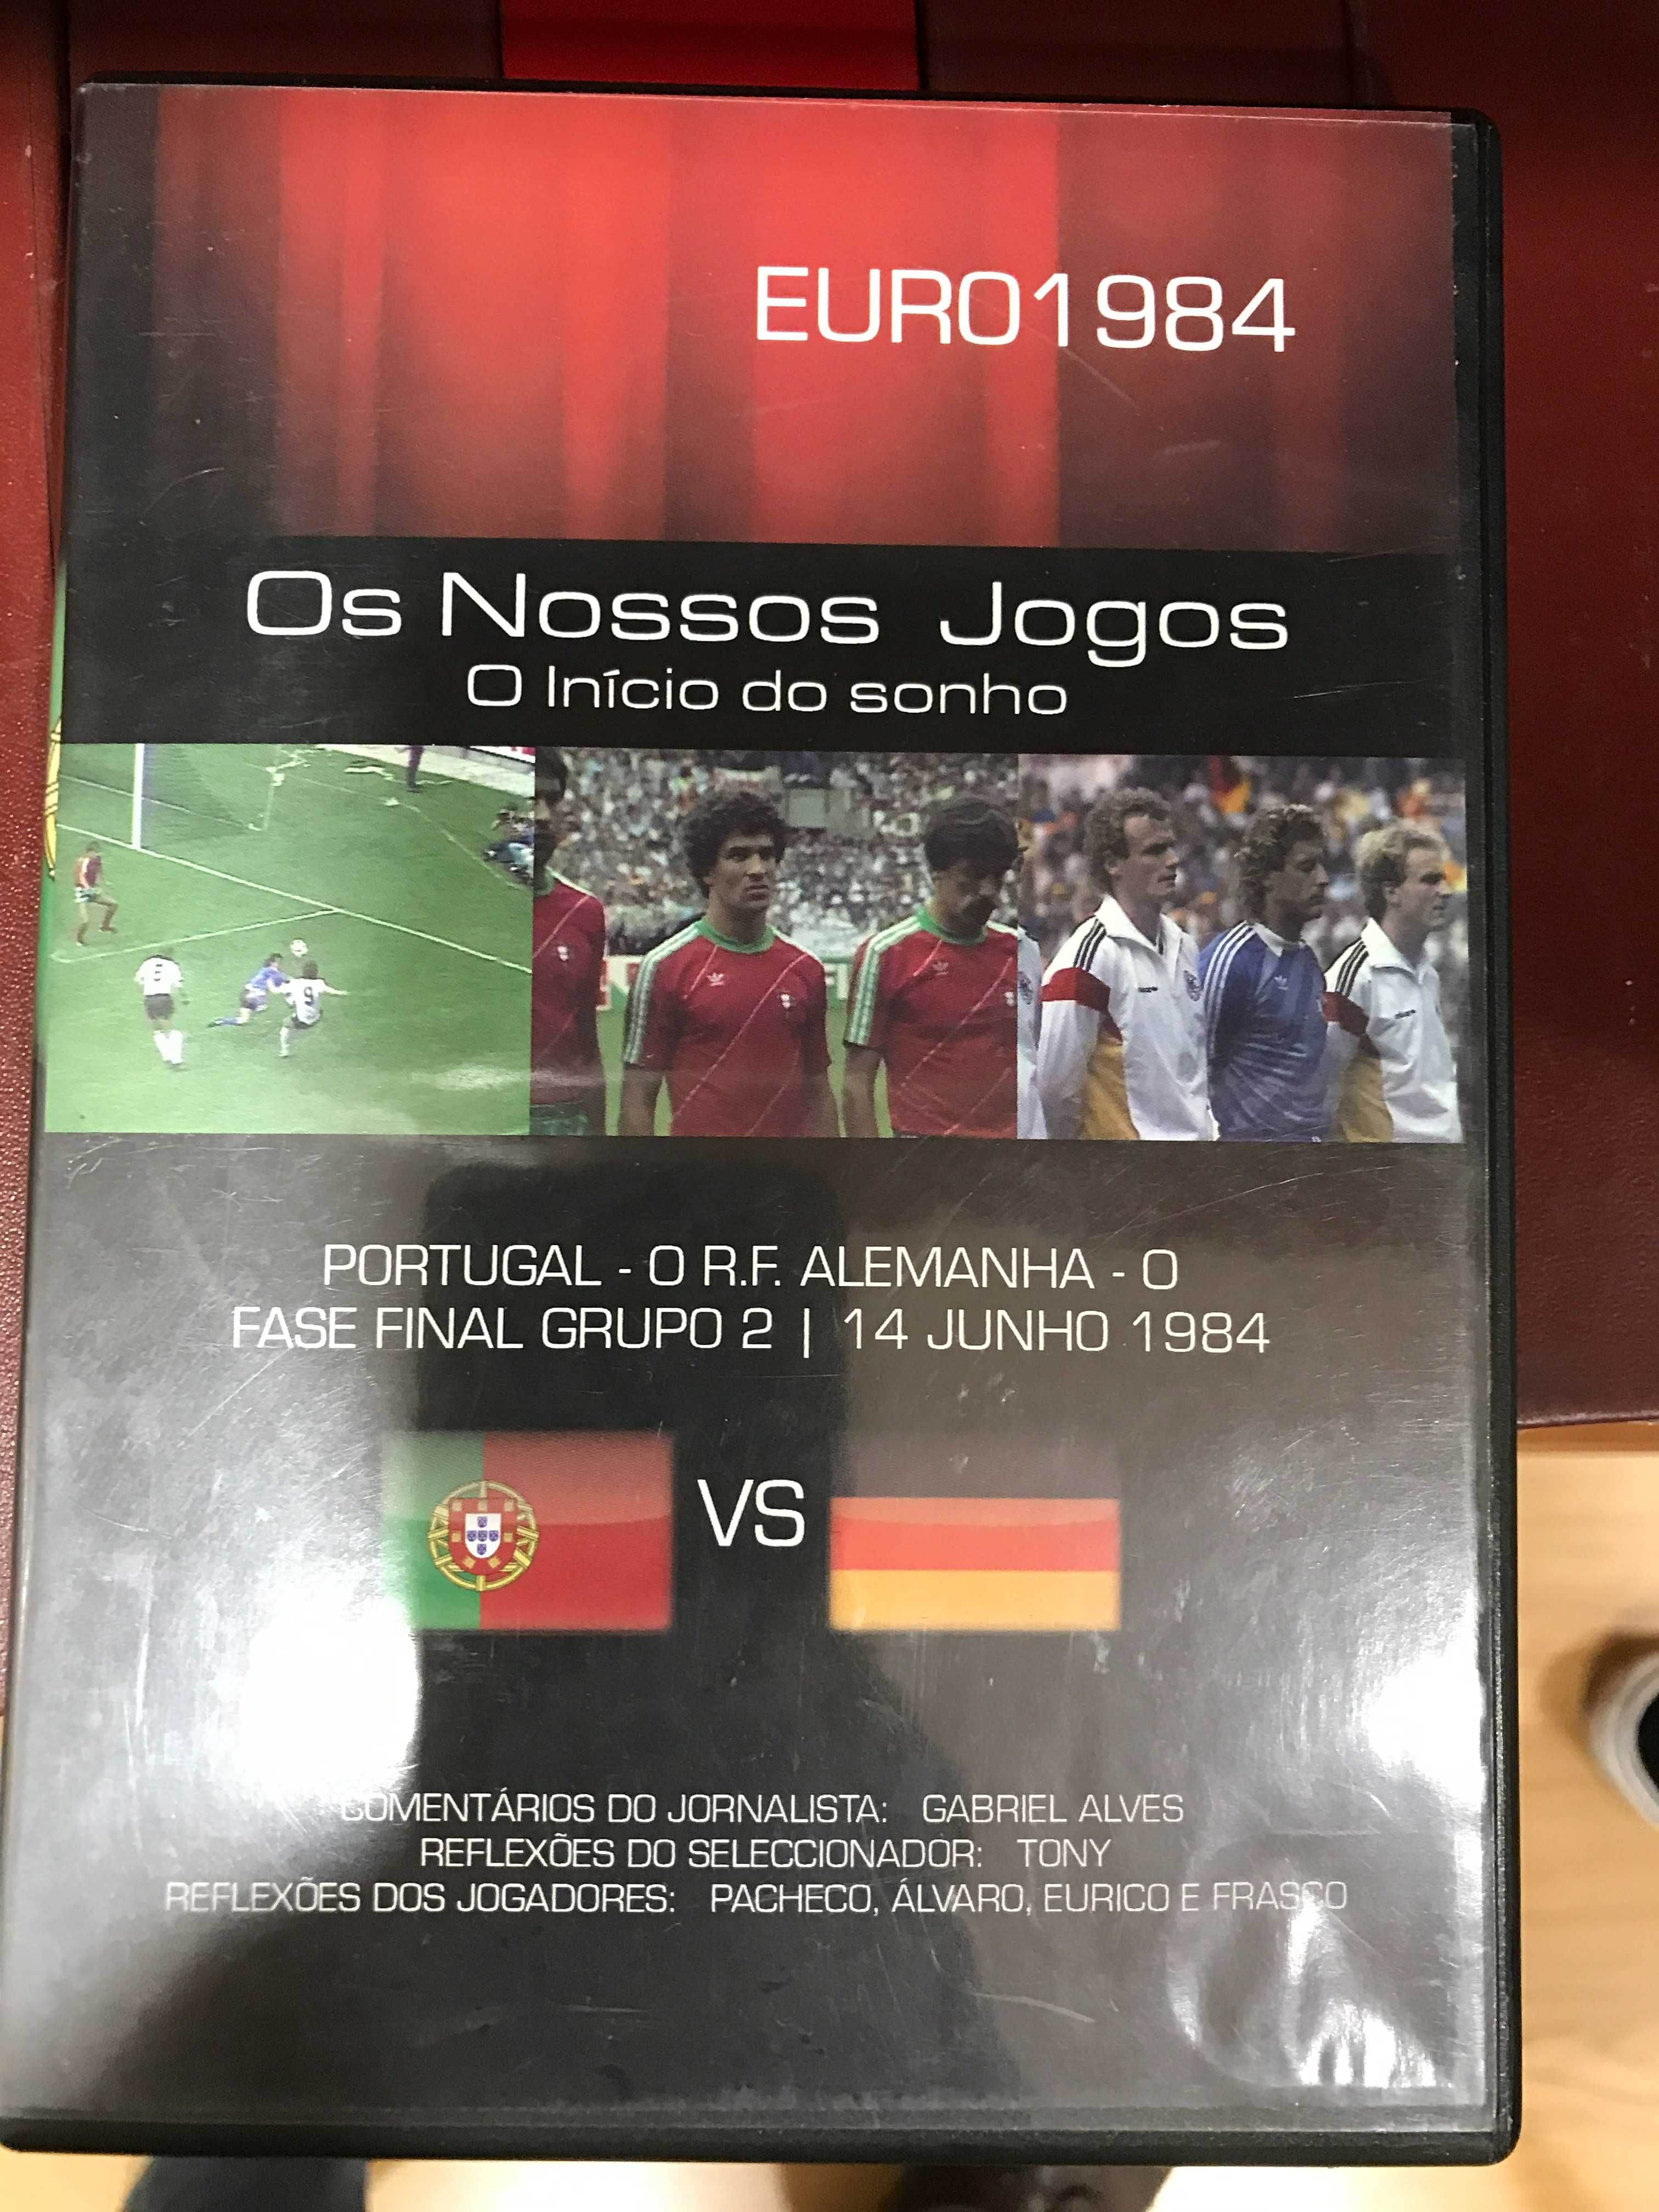 UEFA EURO 1984 - FRANÇA jogos Portugal